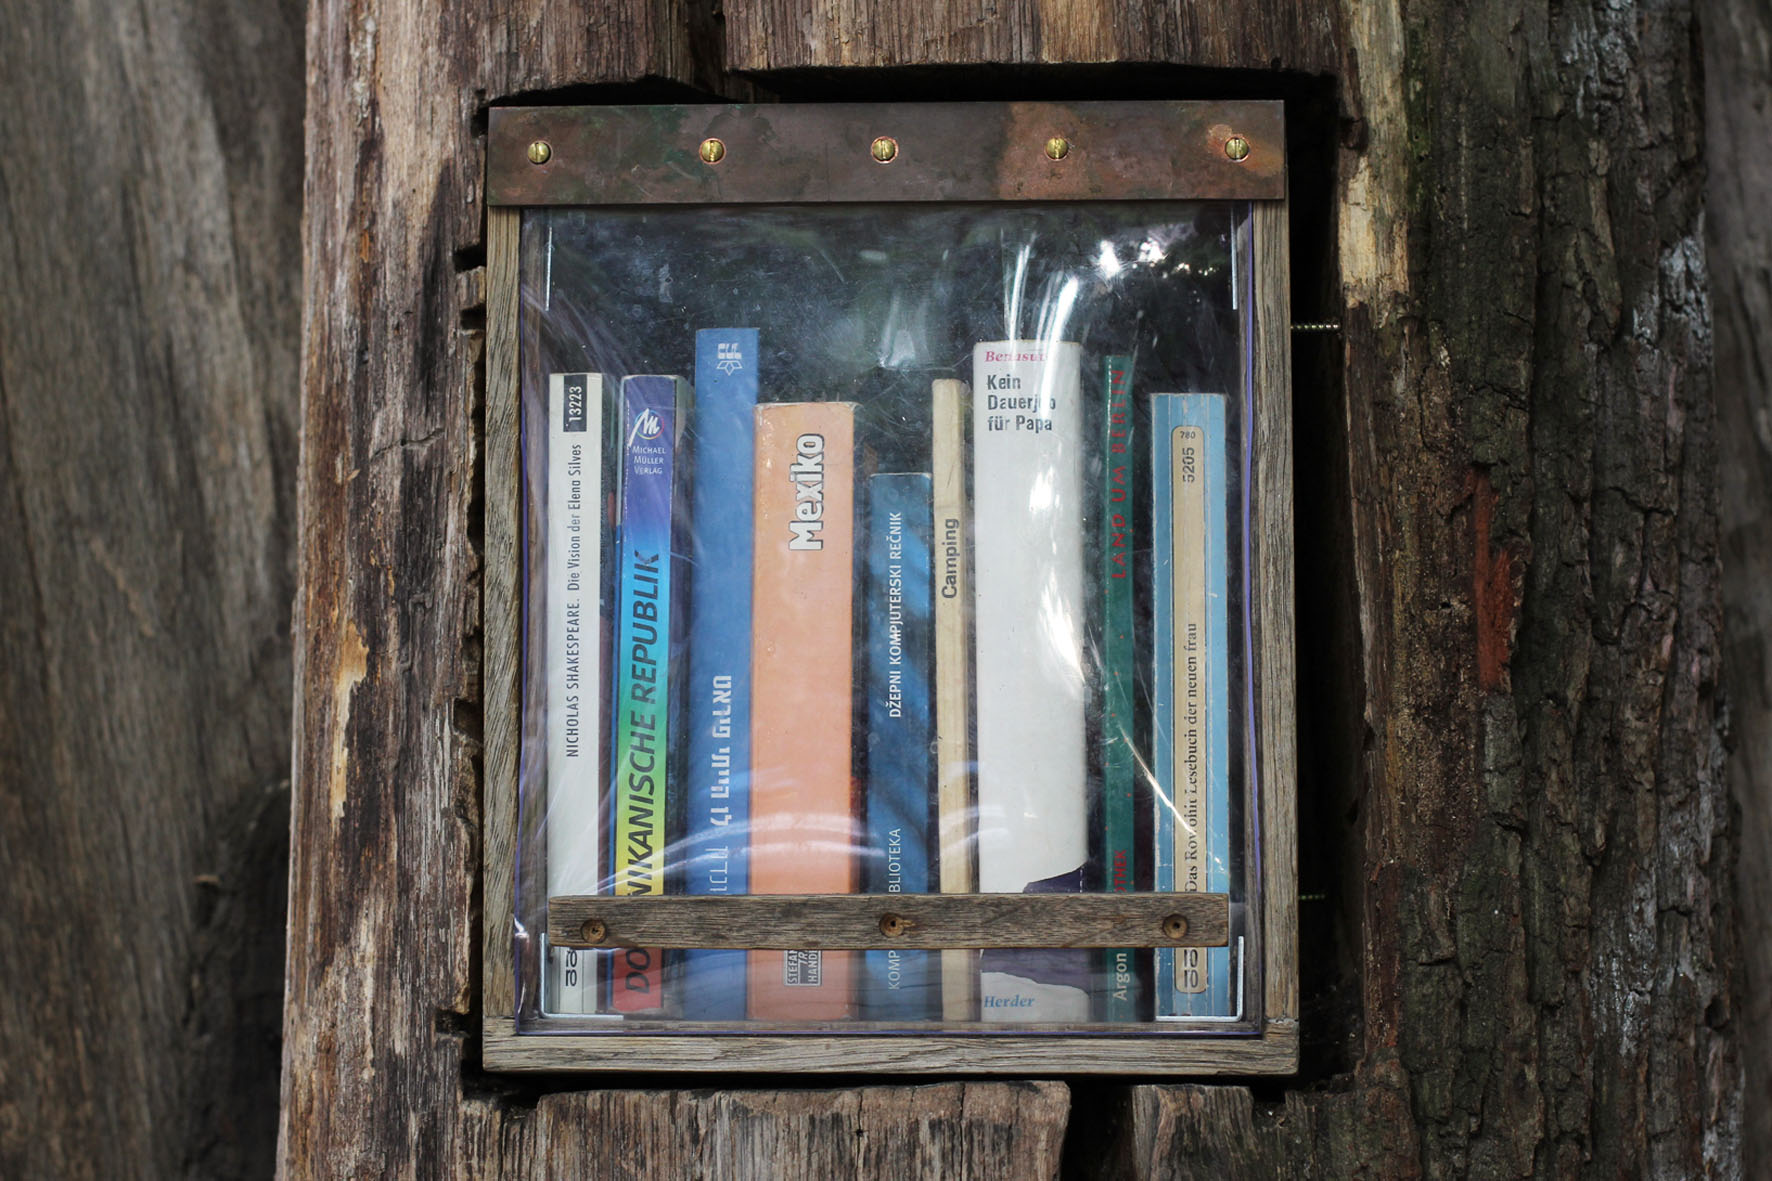 Bücher auf einem Regal im Bücherwald - Eine Bibliothek mit Regalen, die in Stämme geschnitzt sind, die zusammen verschraubt wurden, um einem Baum zu ähneln - auf der Sredzkistrasse in Berlin Prenzlauer Berg